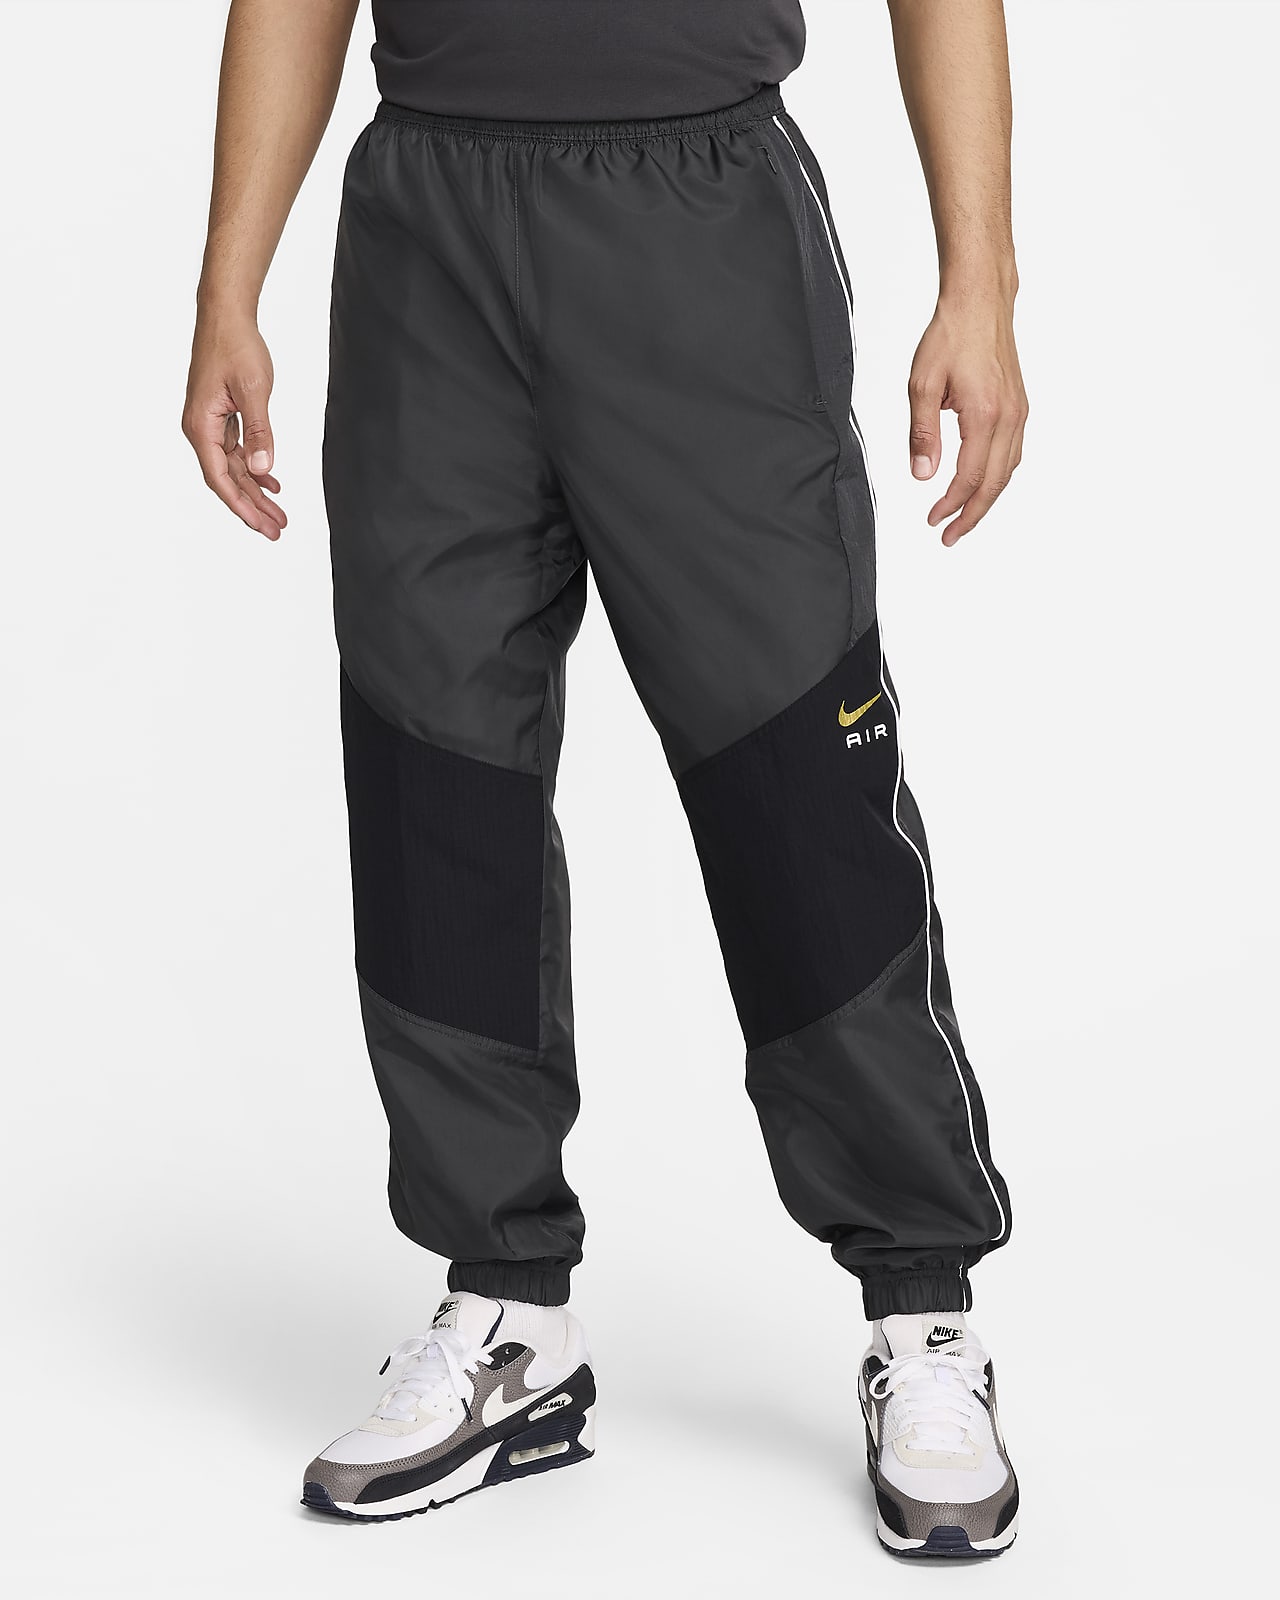 Ανδρικό υφαντό παντελόνι Nike Air. Nike GR